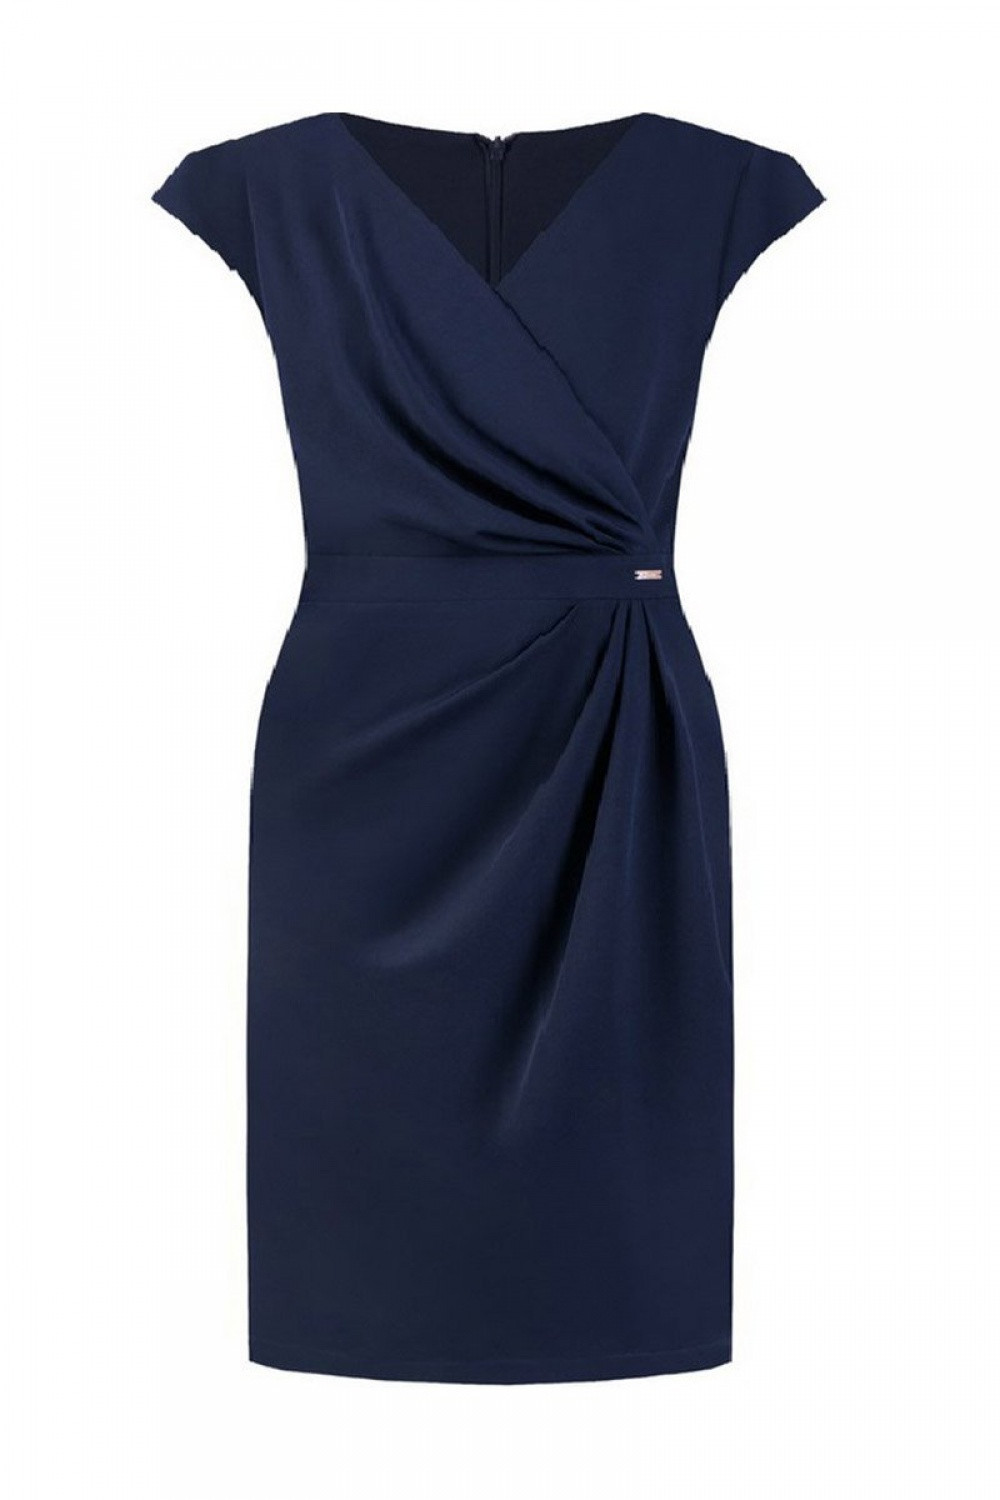 Dámské šaty model 15218501 50 tmavě modrá - Jersa